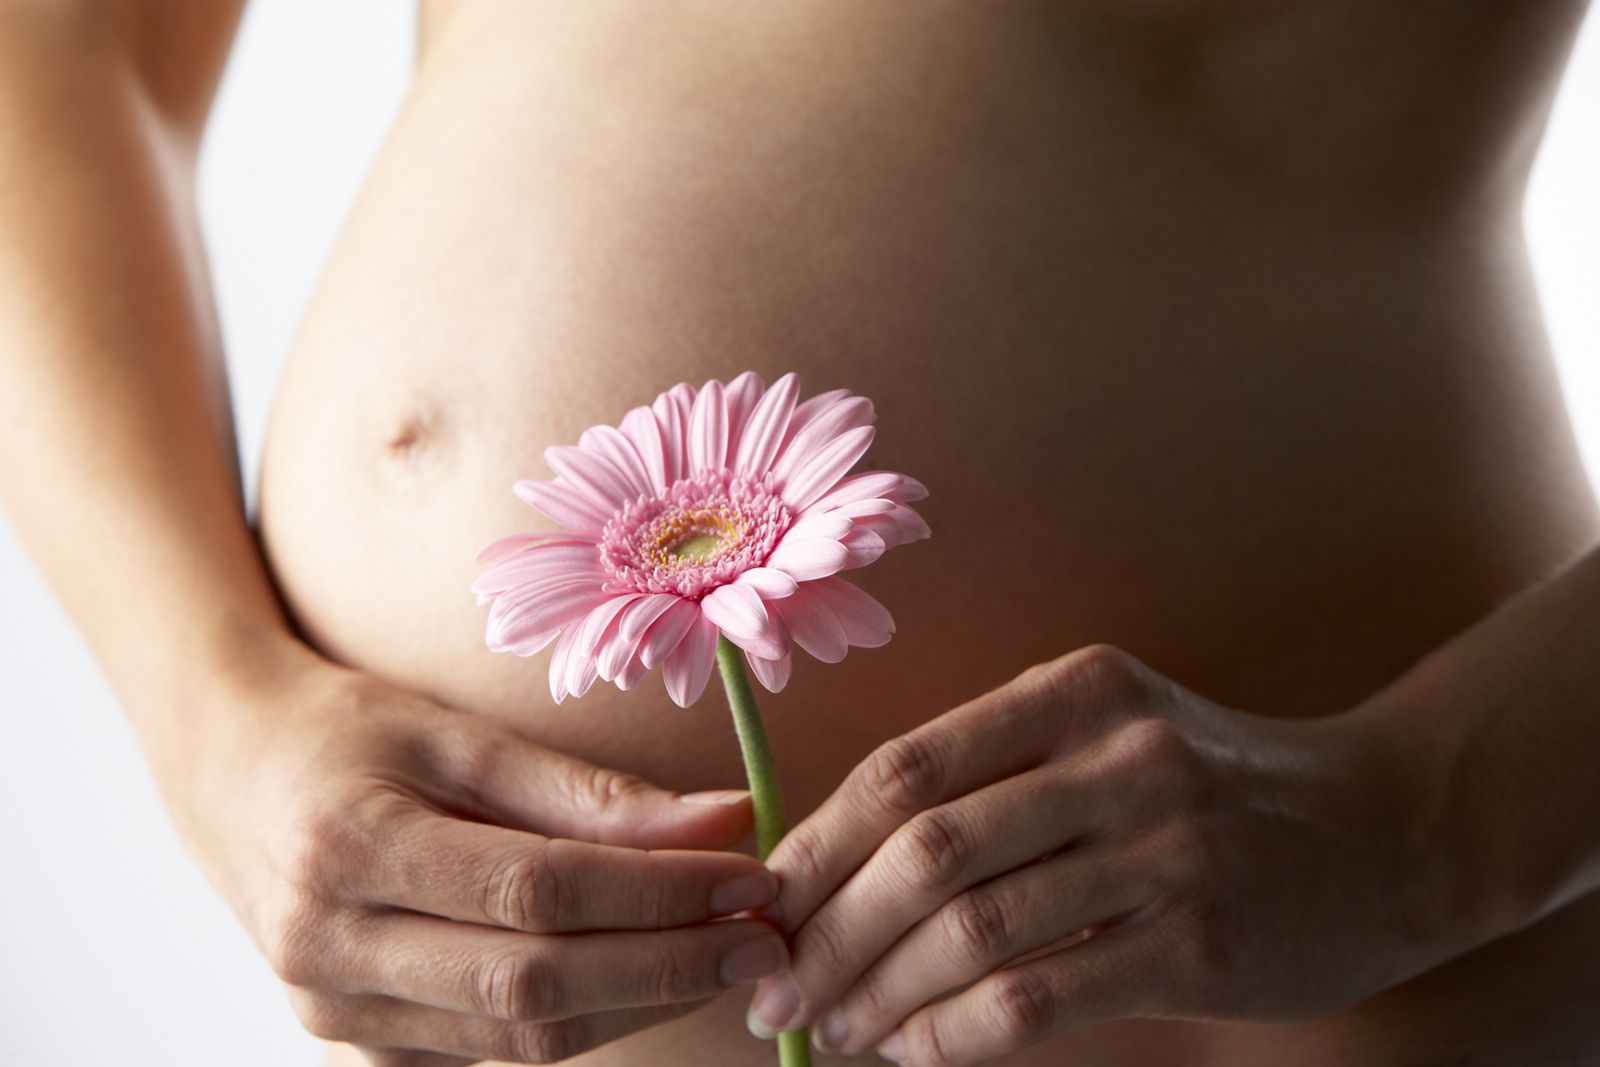 выделения из груди 36 неделя беременности фото 68